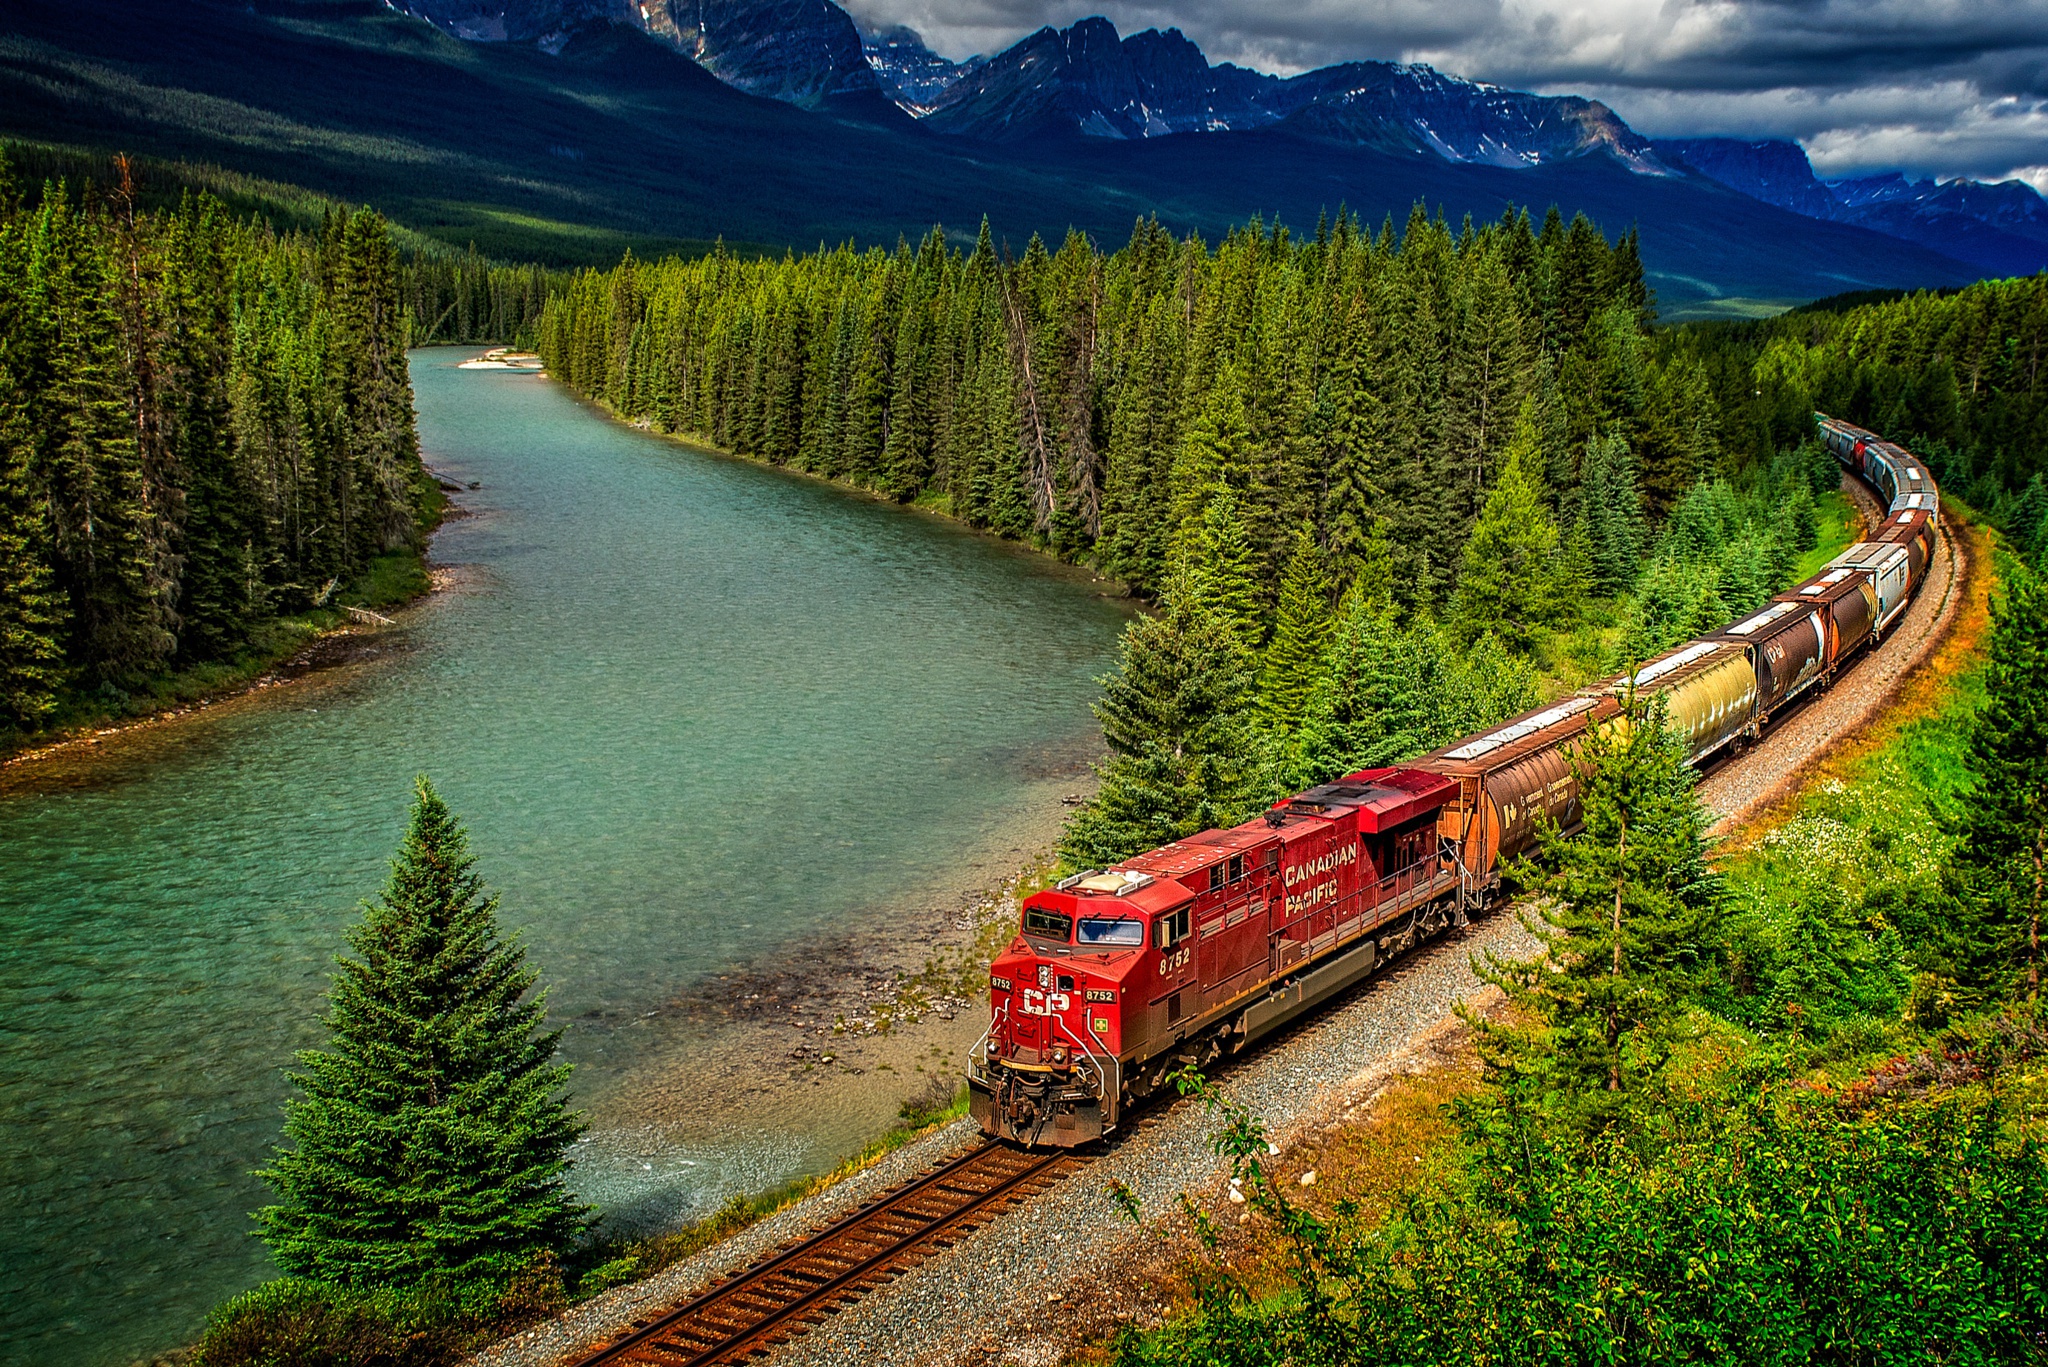 train, vehicles, forest, landscape, locomotive, mountain, river